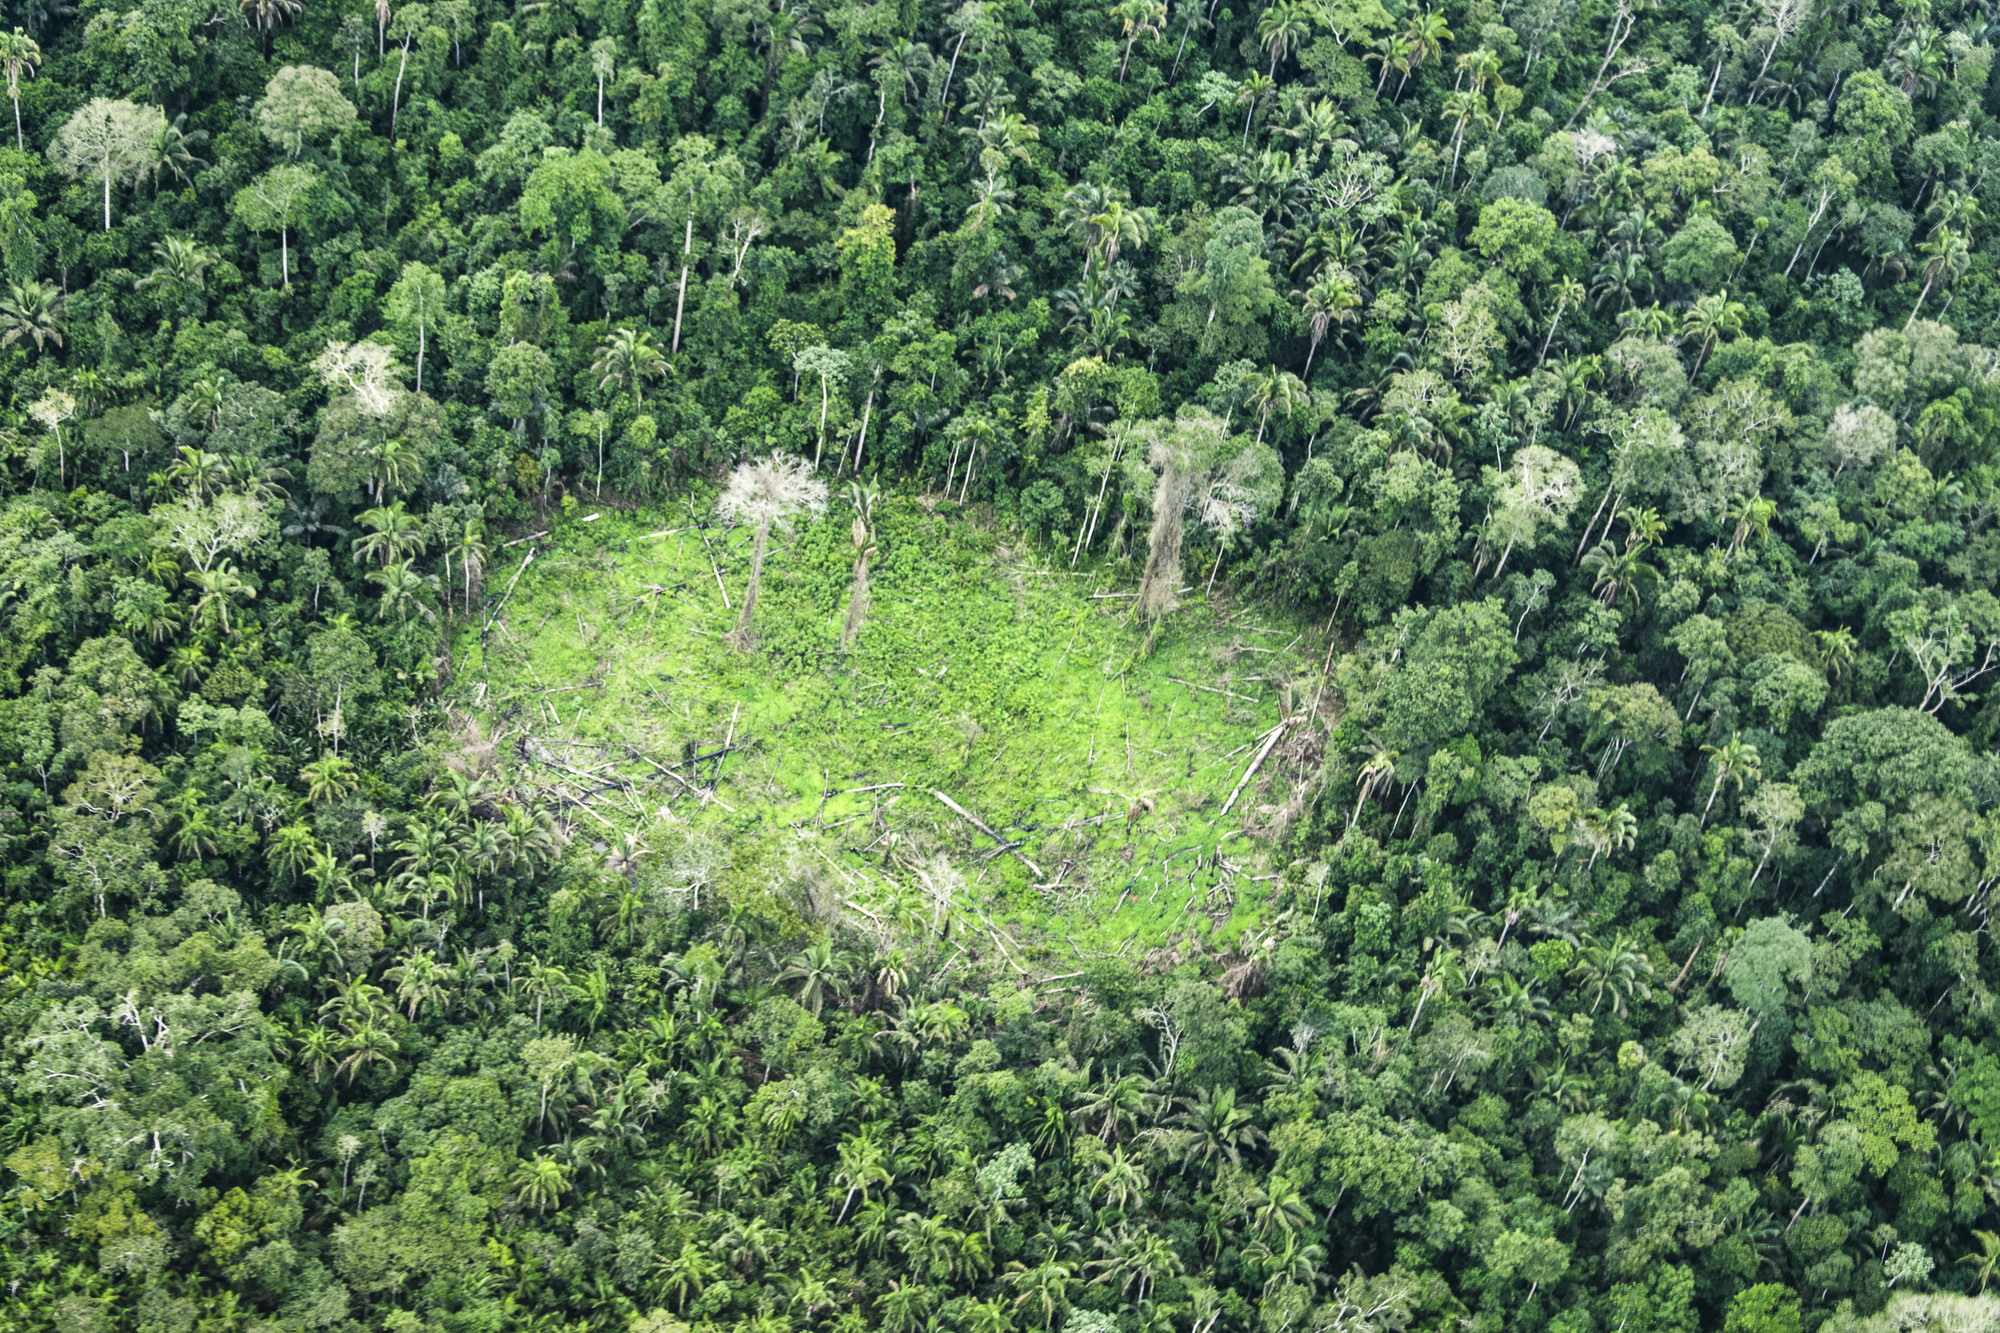 Destruição da floresta é resultado da abertura de áreas para garimpo, exploração agropecuária e grilagem de terras